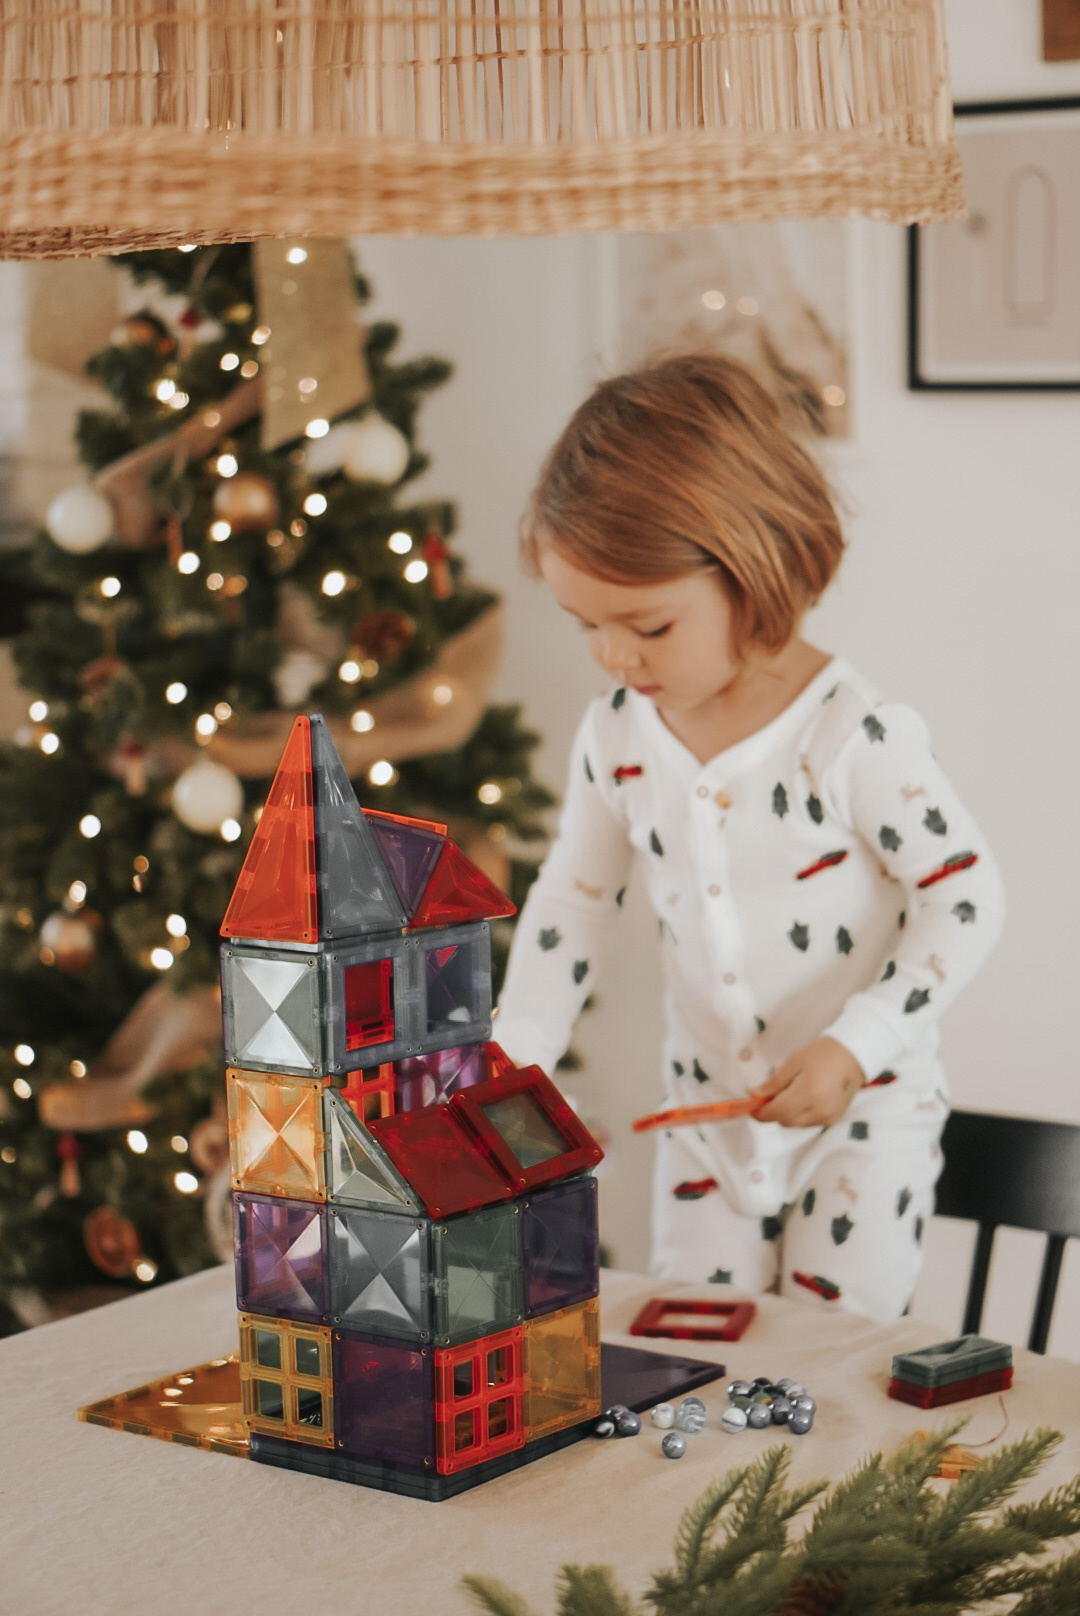 Guide de magasinage de Noël: choisir un jouet adapté